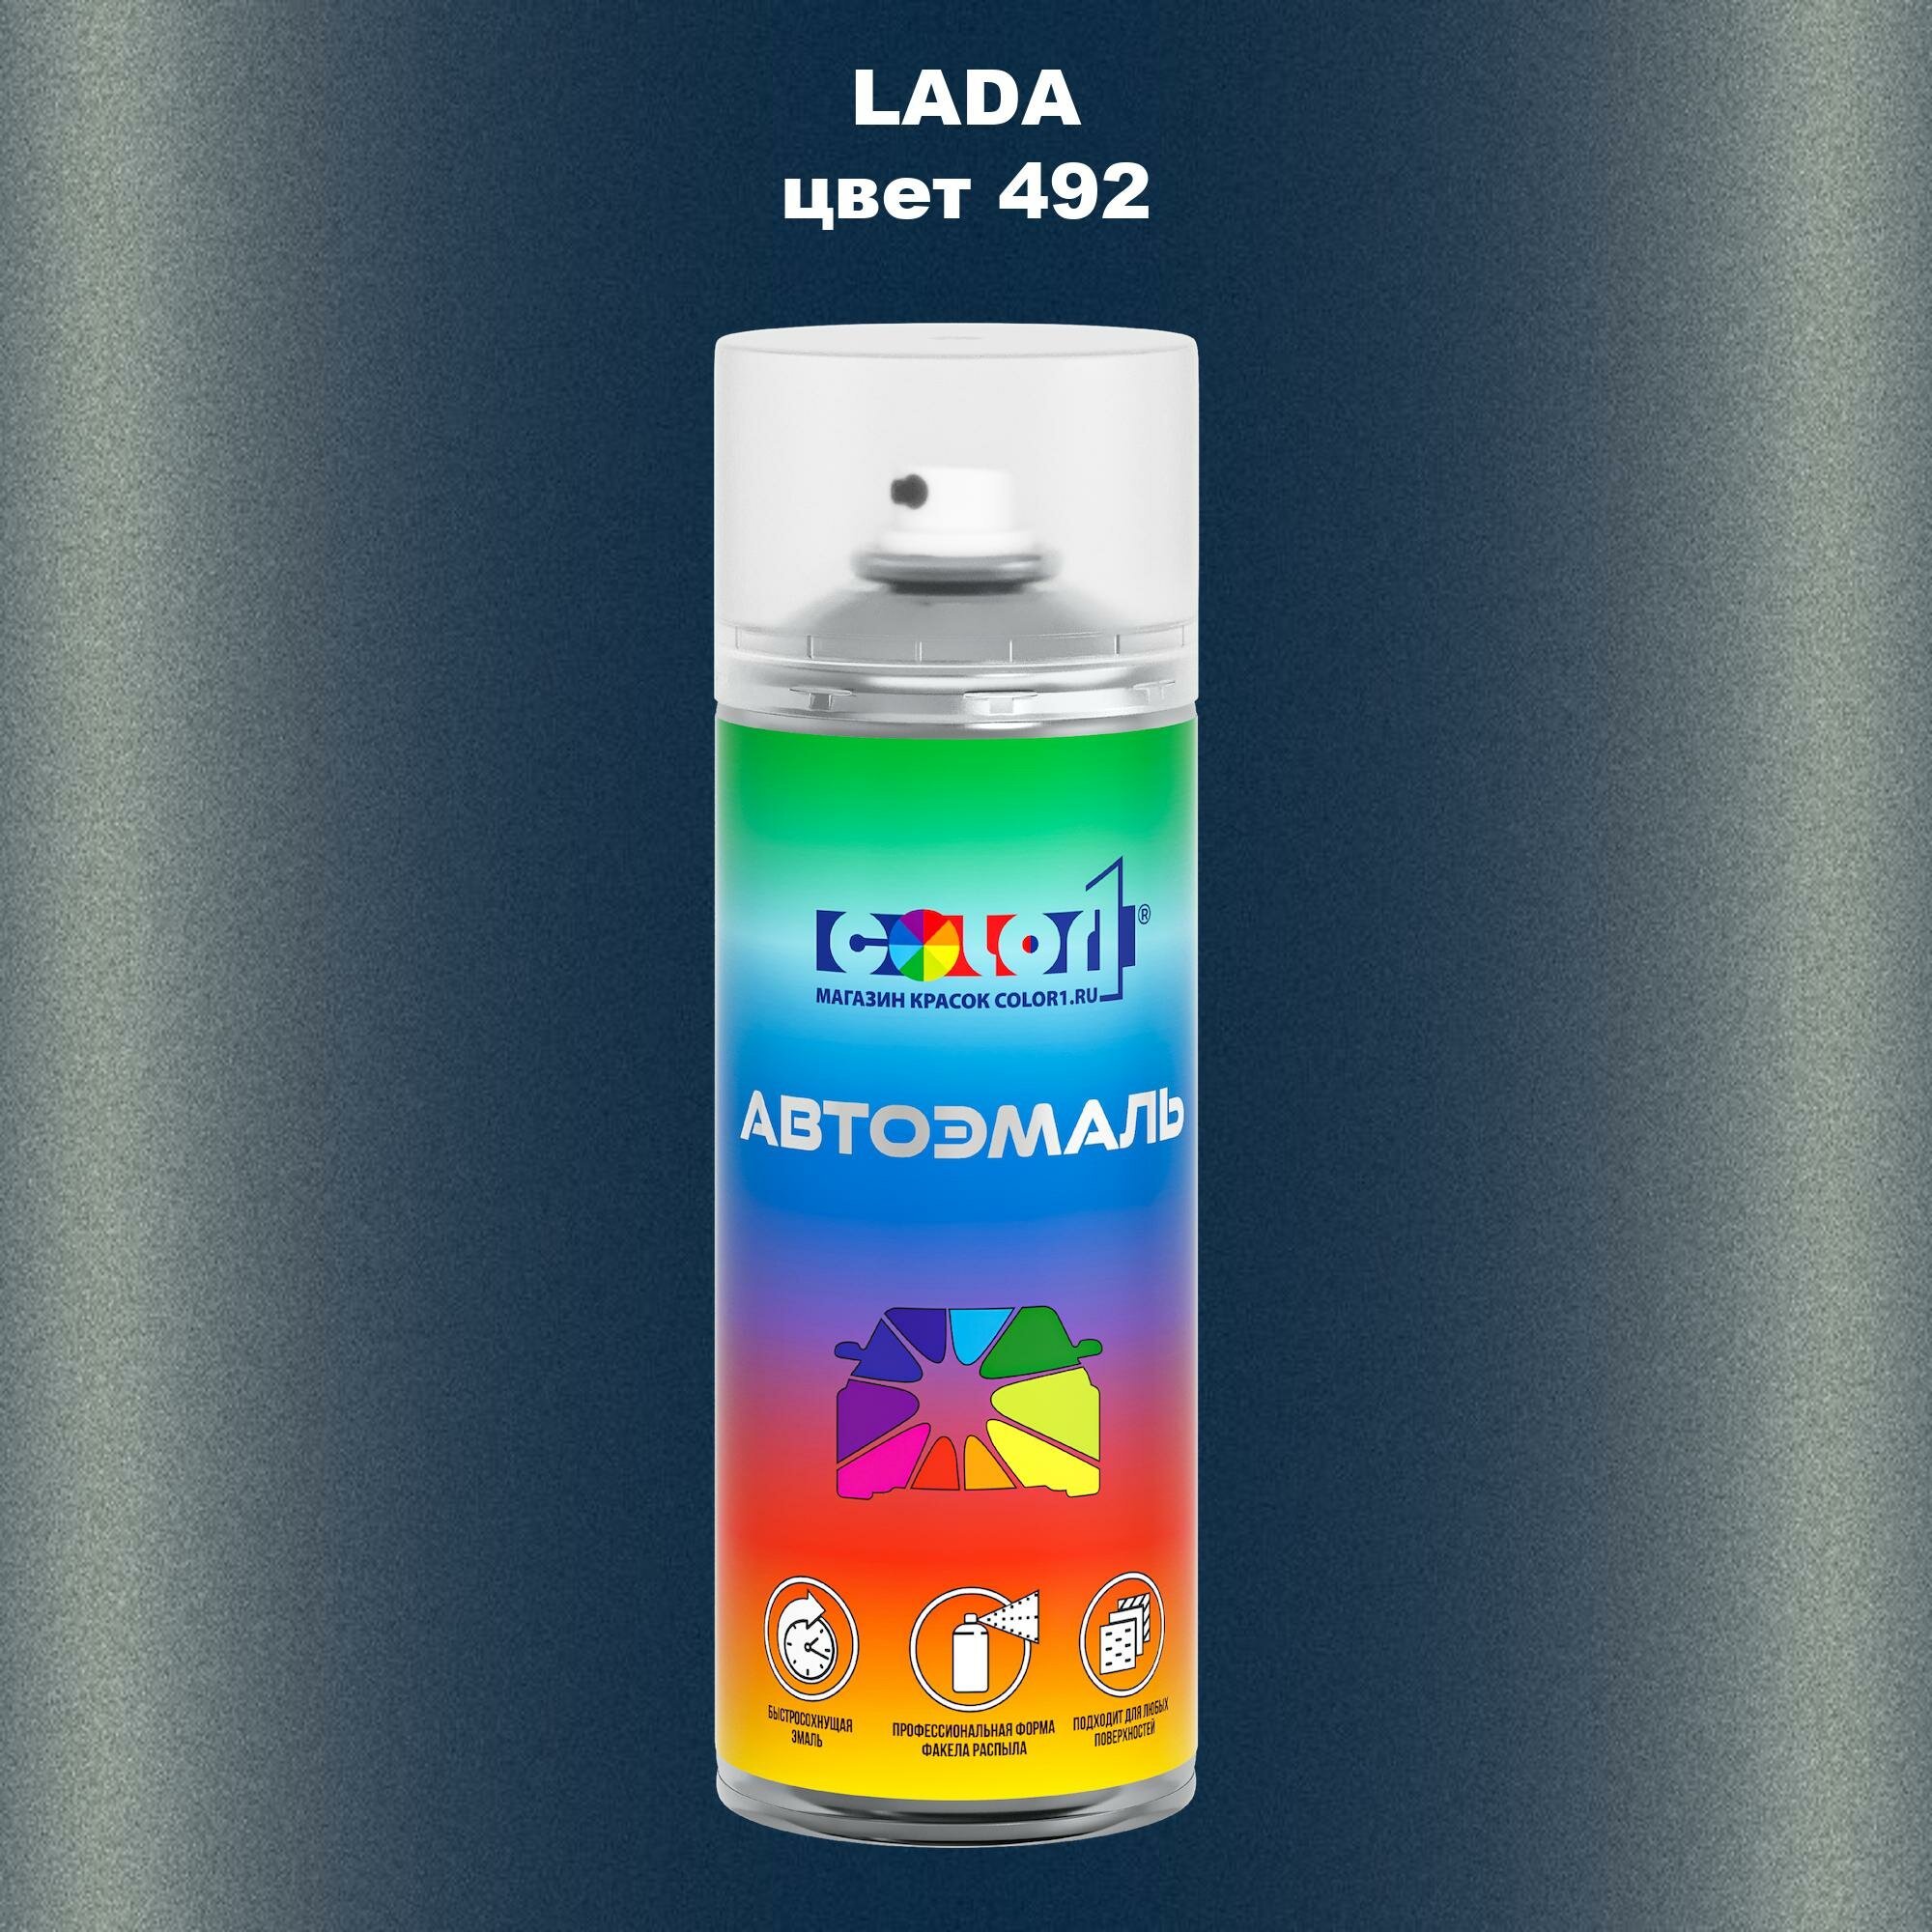 Аэрозольная краска 520мл, для LADA, цвет 492 - блюз (BLUZ)